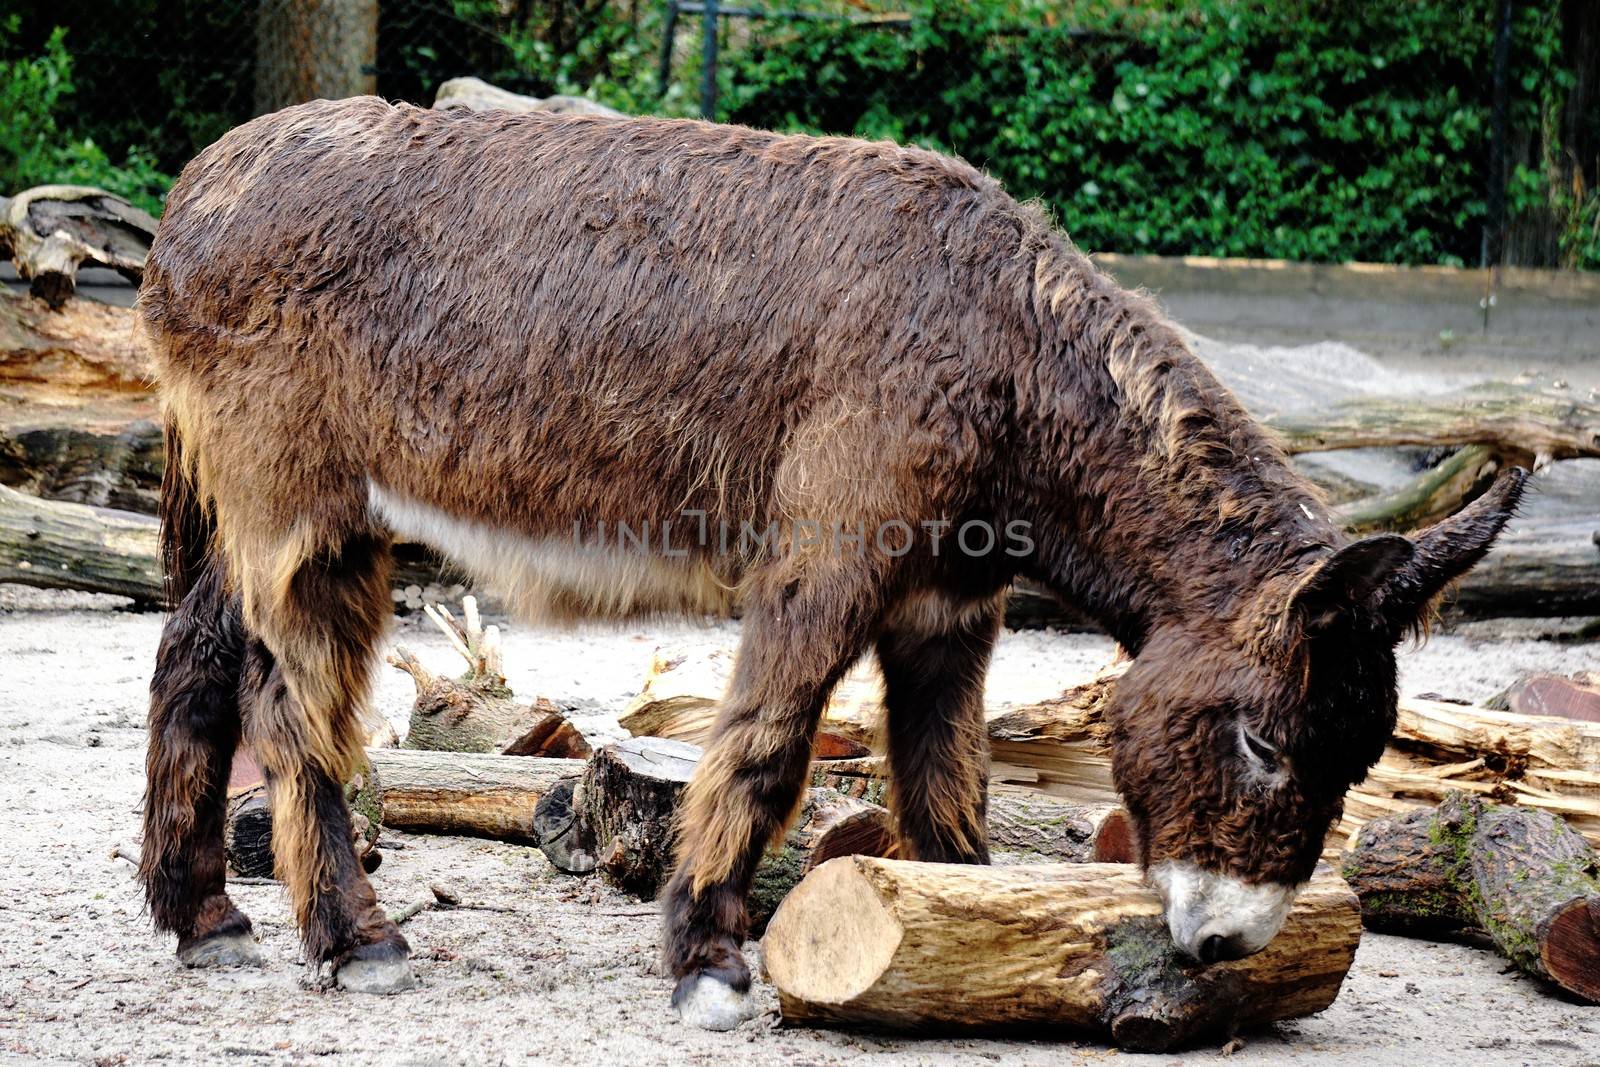 Poitou donkey playing with log on rainy day